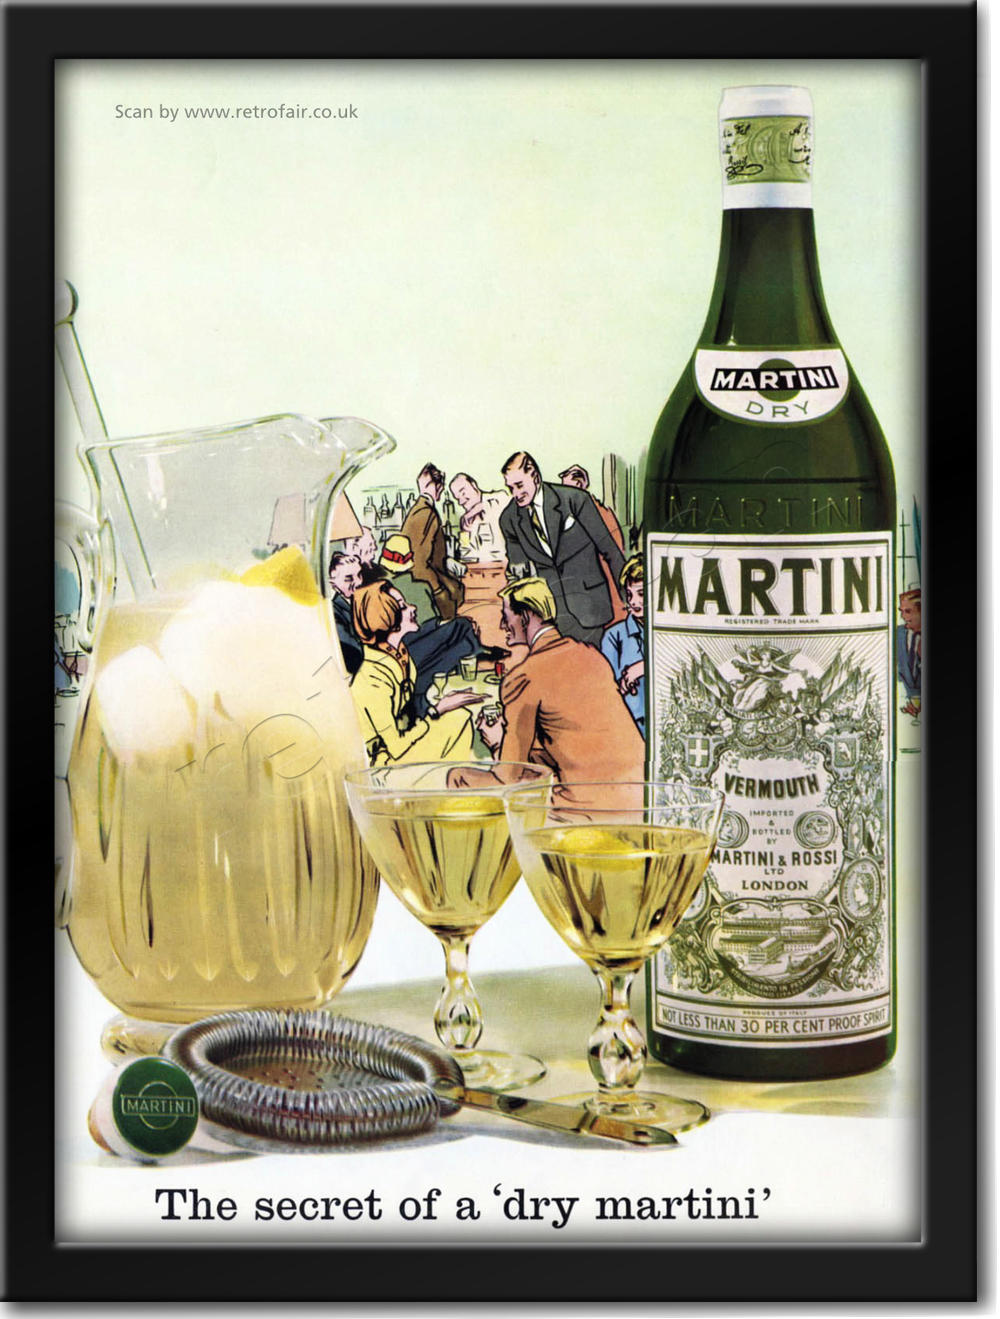 1961 vintage Martini advert